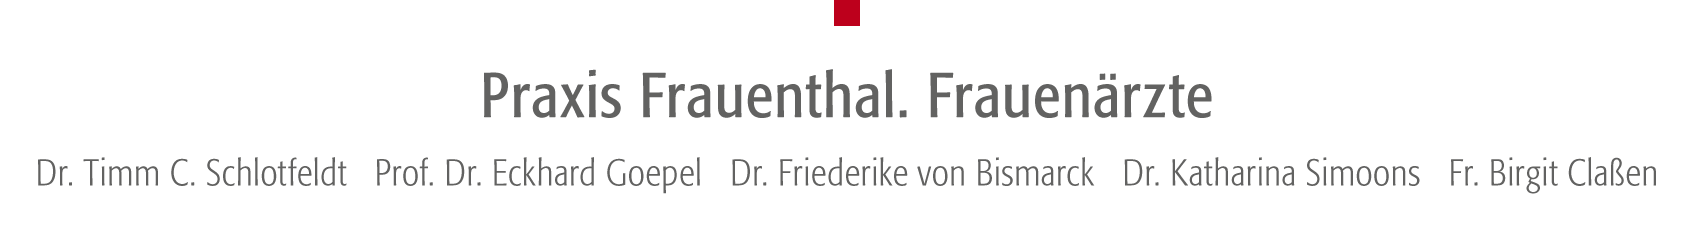 Startseite – Praxis Frauenthal - Dr. Timm C. Schlotfeldt, Prof. Dr. Eckhard Goepel, Dr. Olaf Katzler, Dr. Friederike von Bismarck, Dr. Dorothee von Bülow